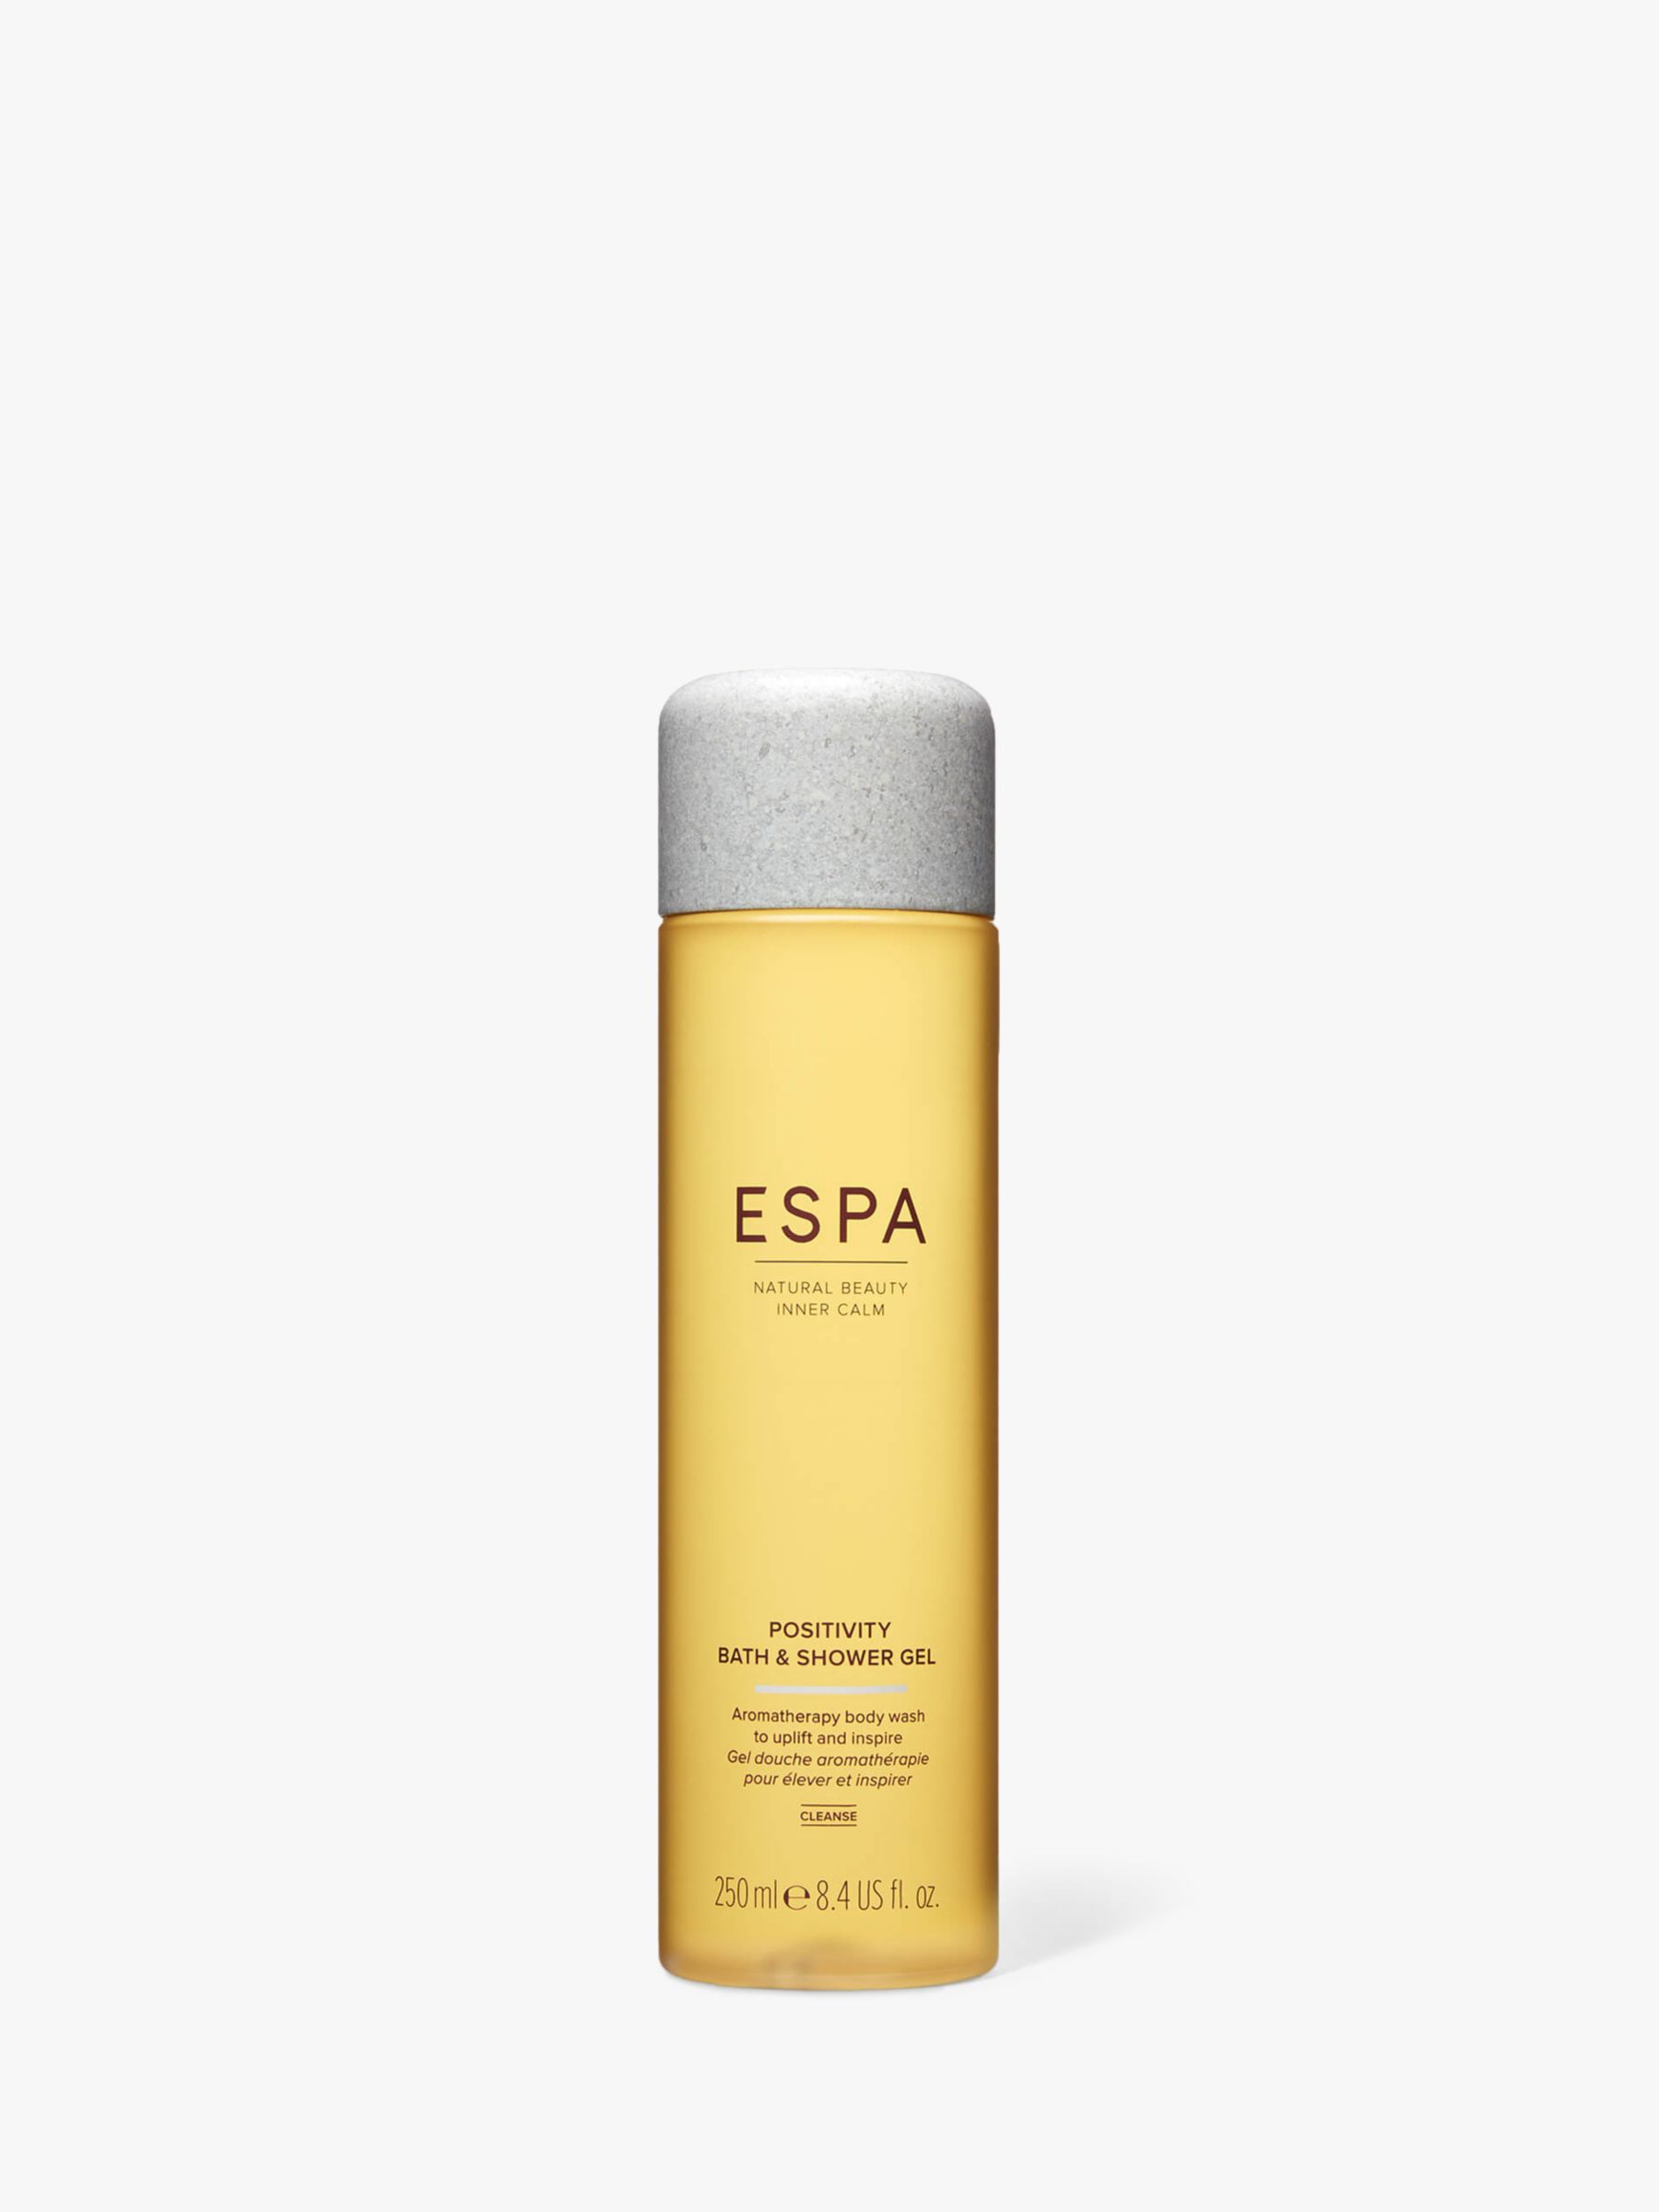 ESPA Positivity Bath & Shower Gel, 250ml